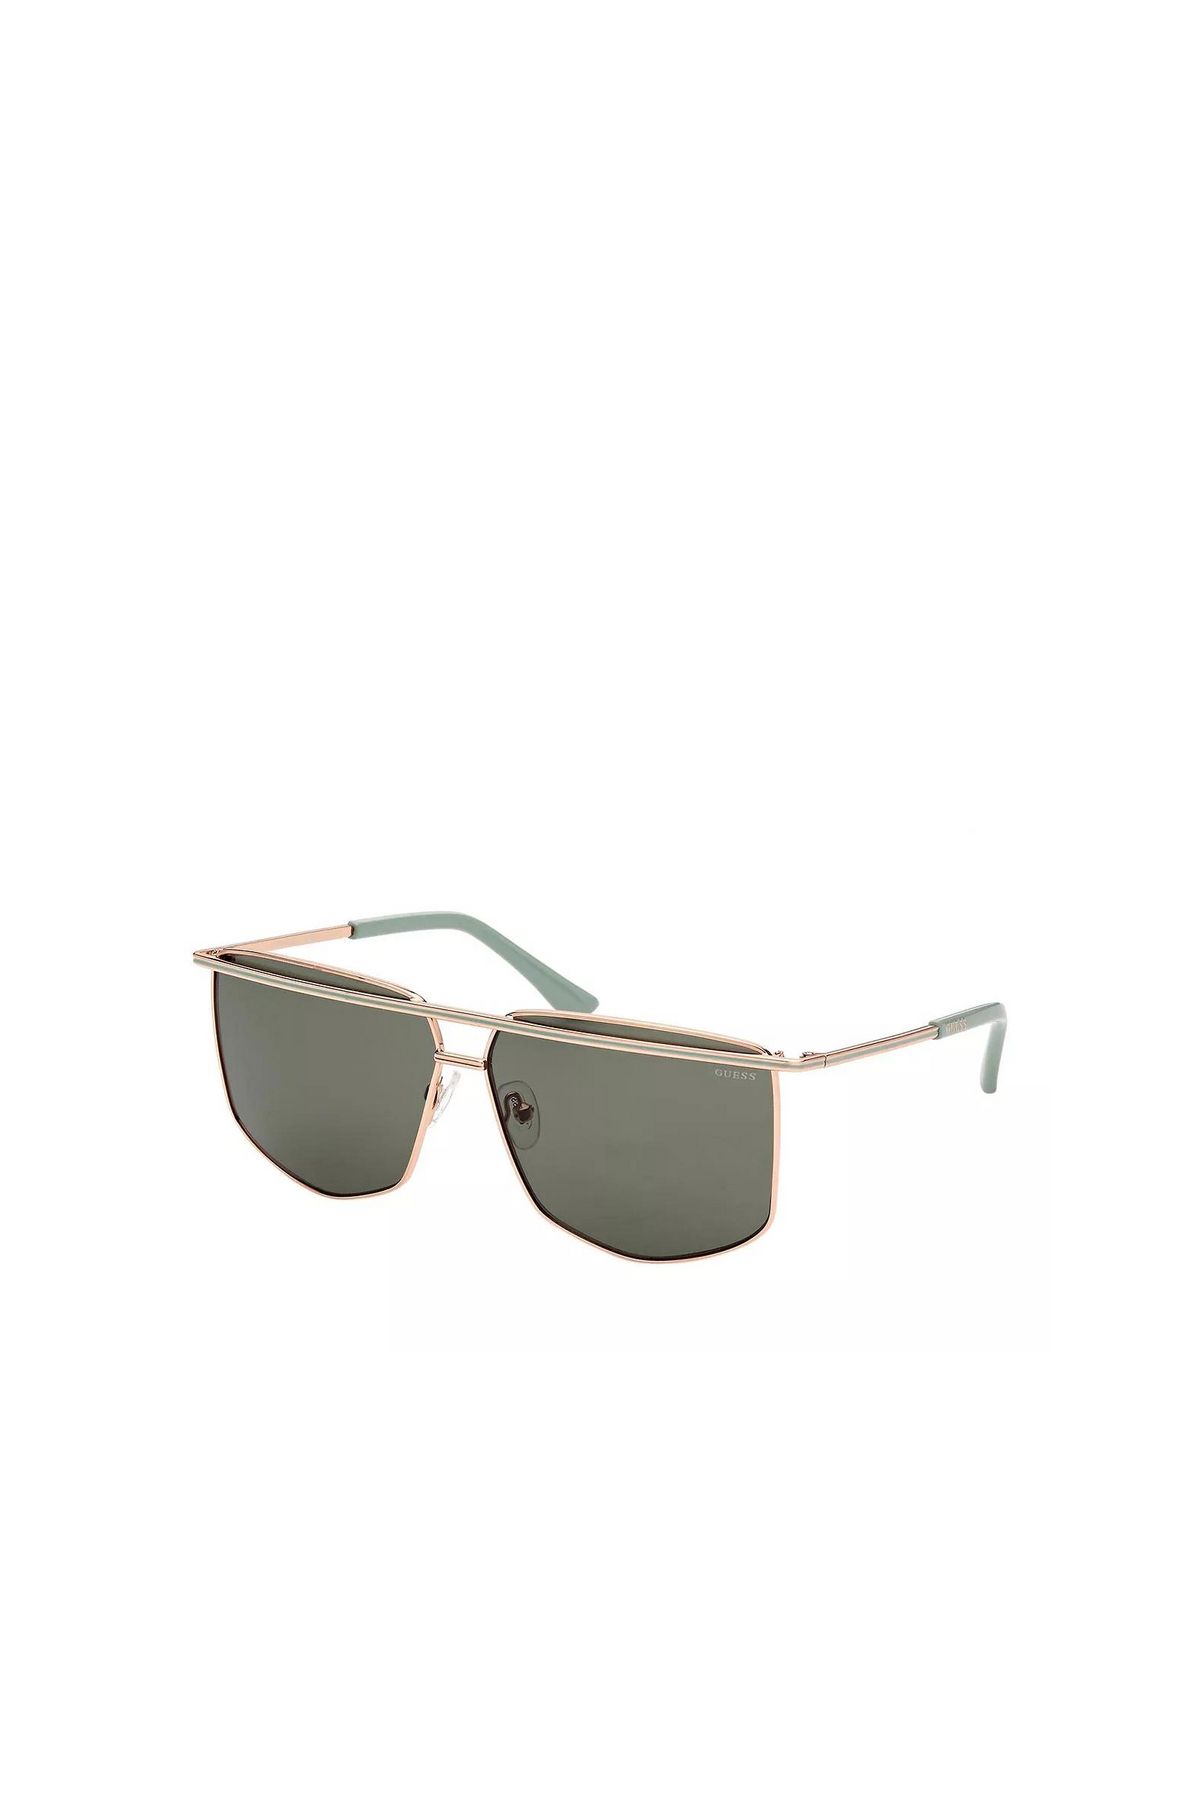 Louis Vuitton Sonnenbrille Herren